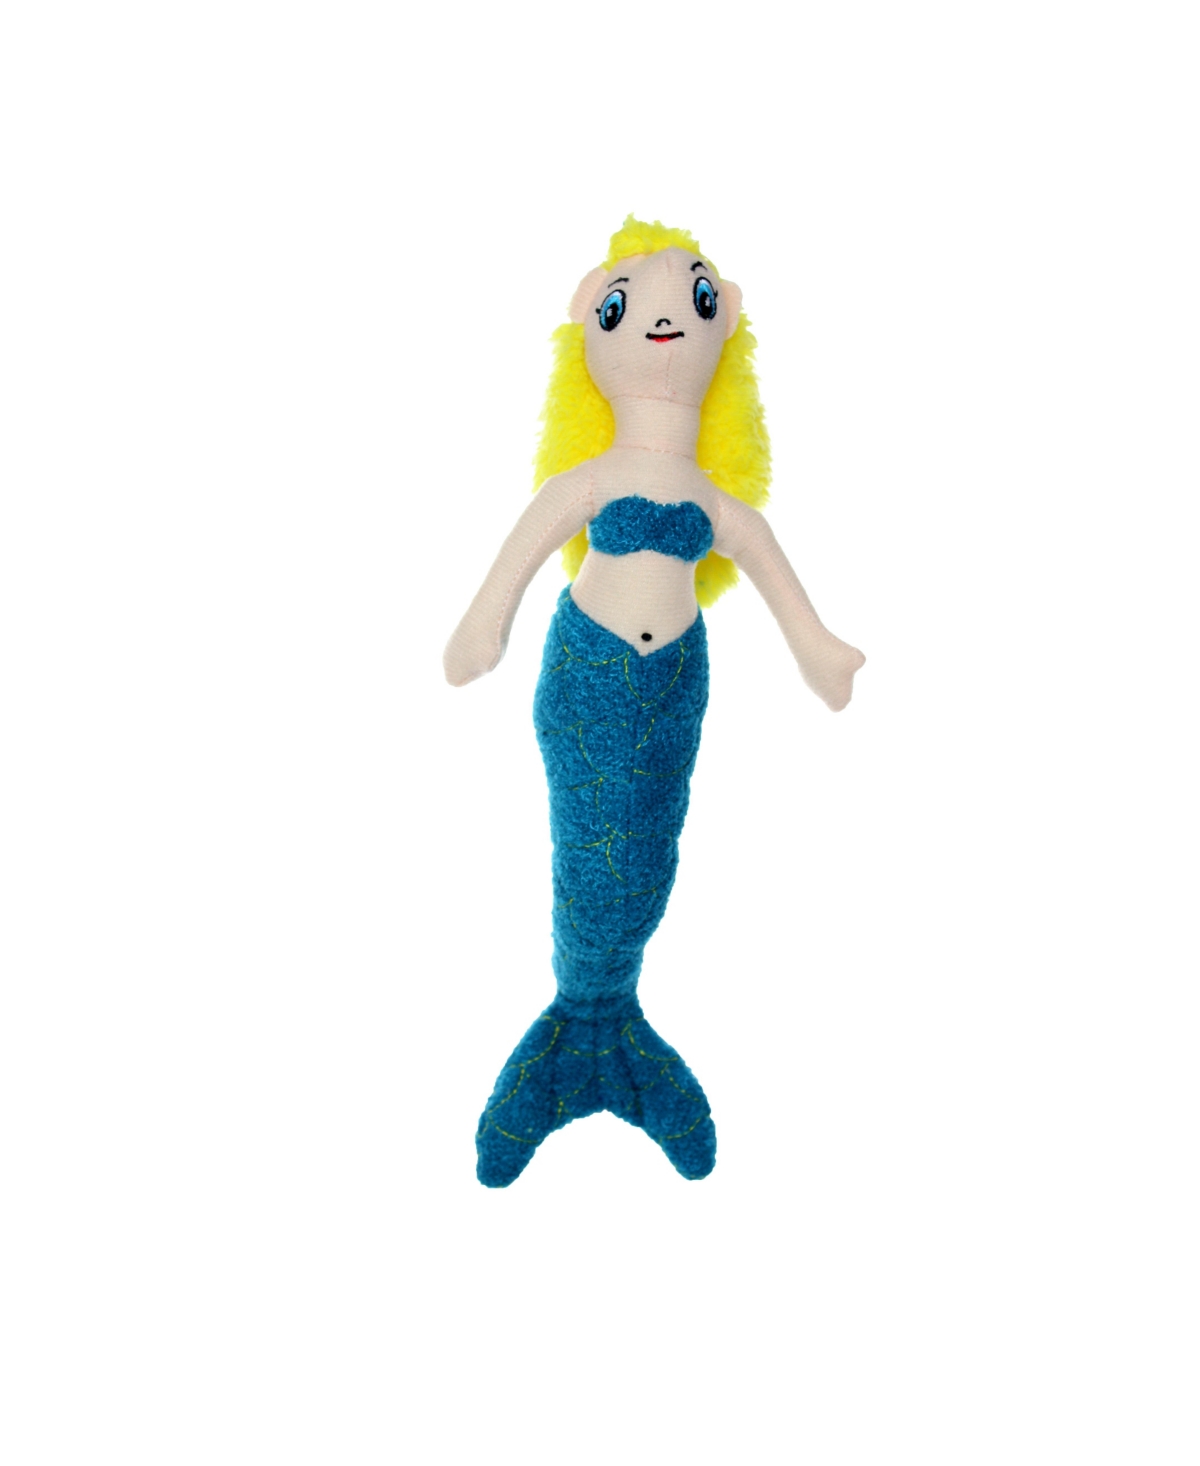 Jr Liar Mermaid, Dog Toy - Blue